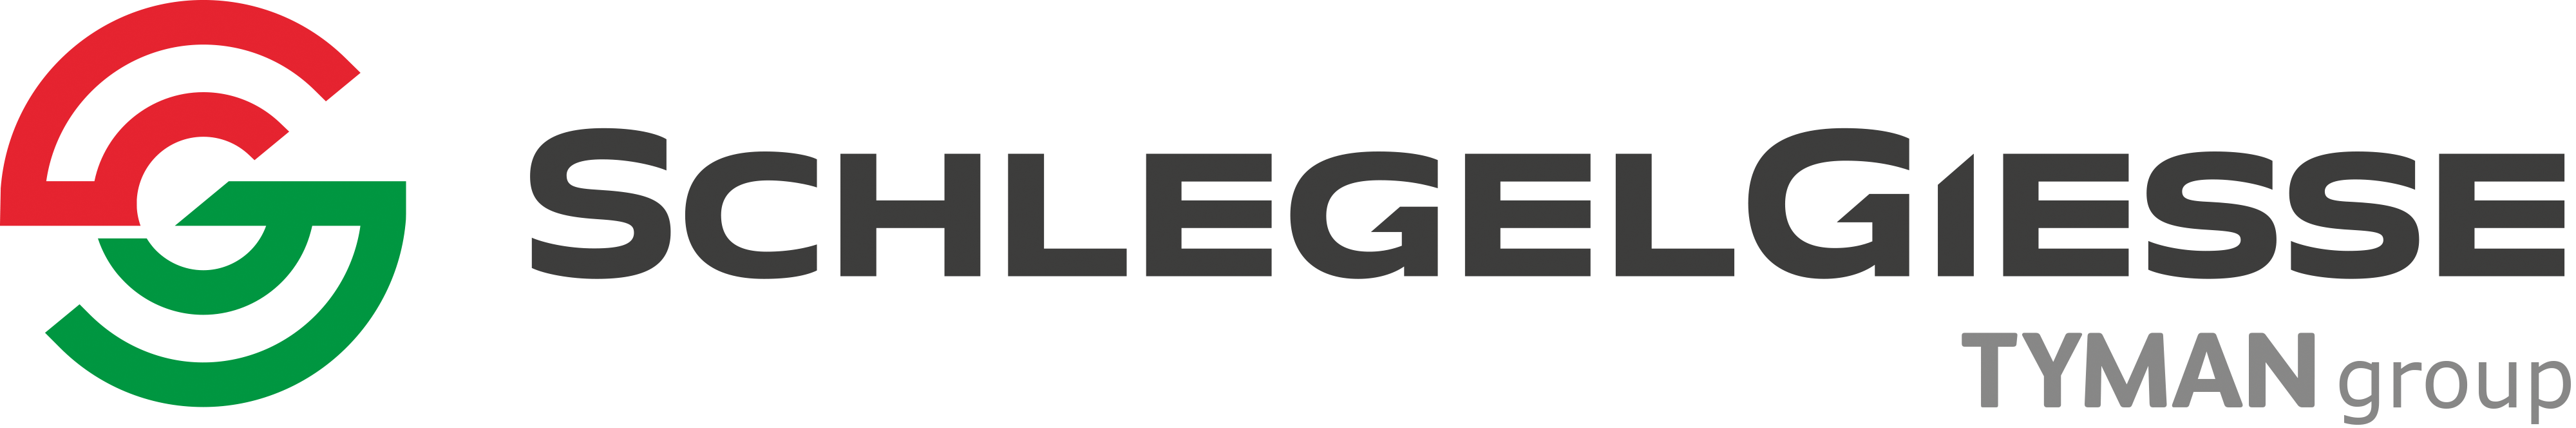 schlegelgiesse-logo-original-header